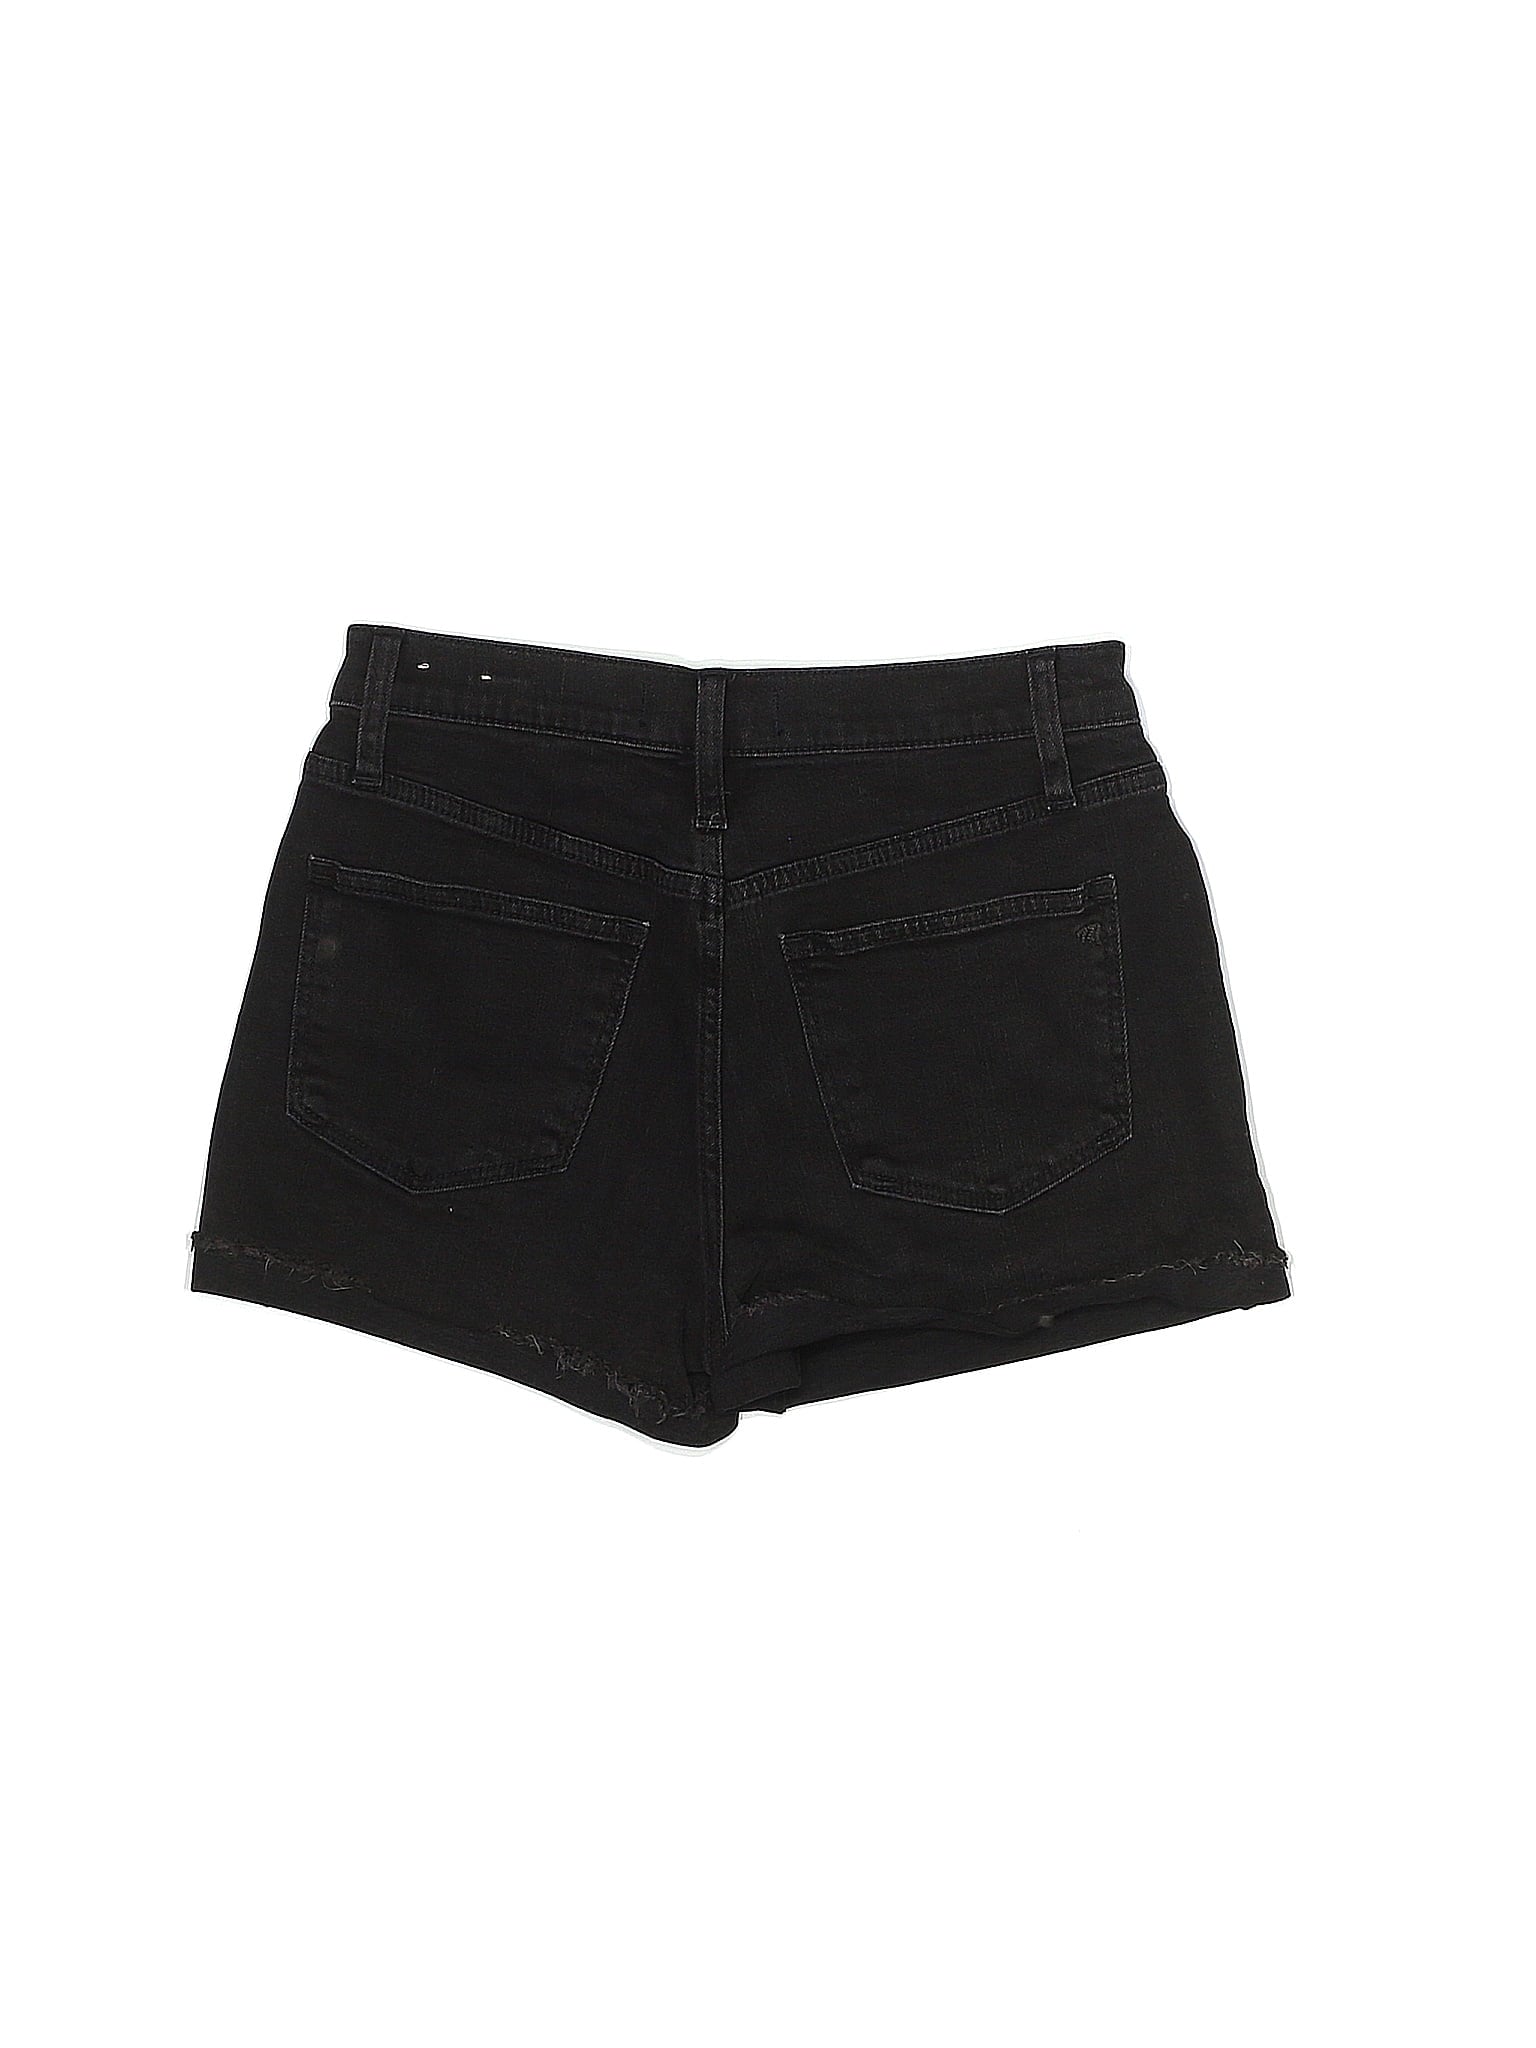 Low-Rise Denim Shorts in Dark Wash waist size - 24